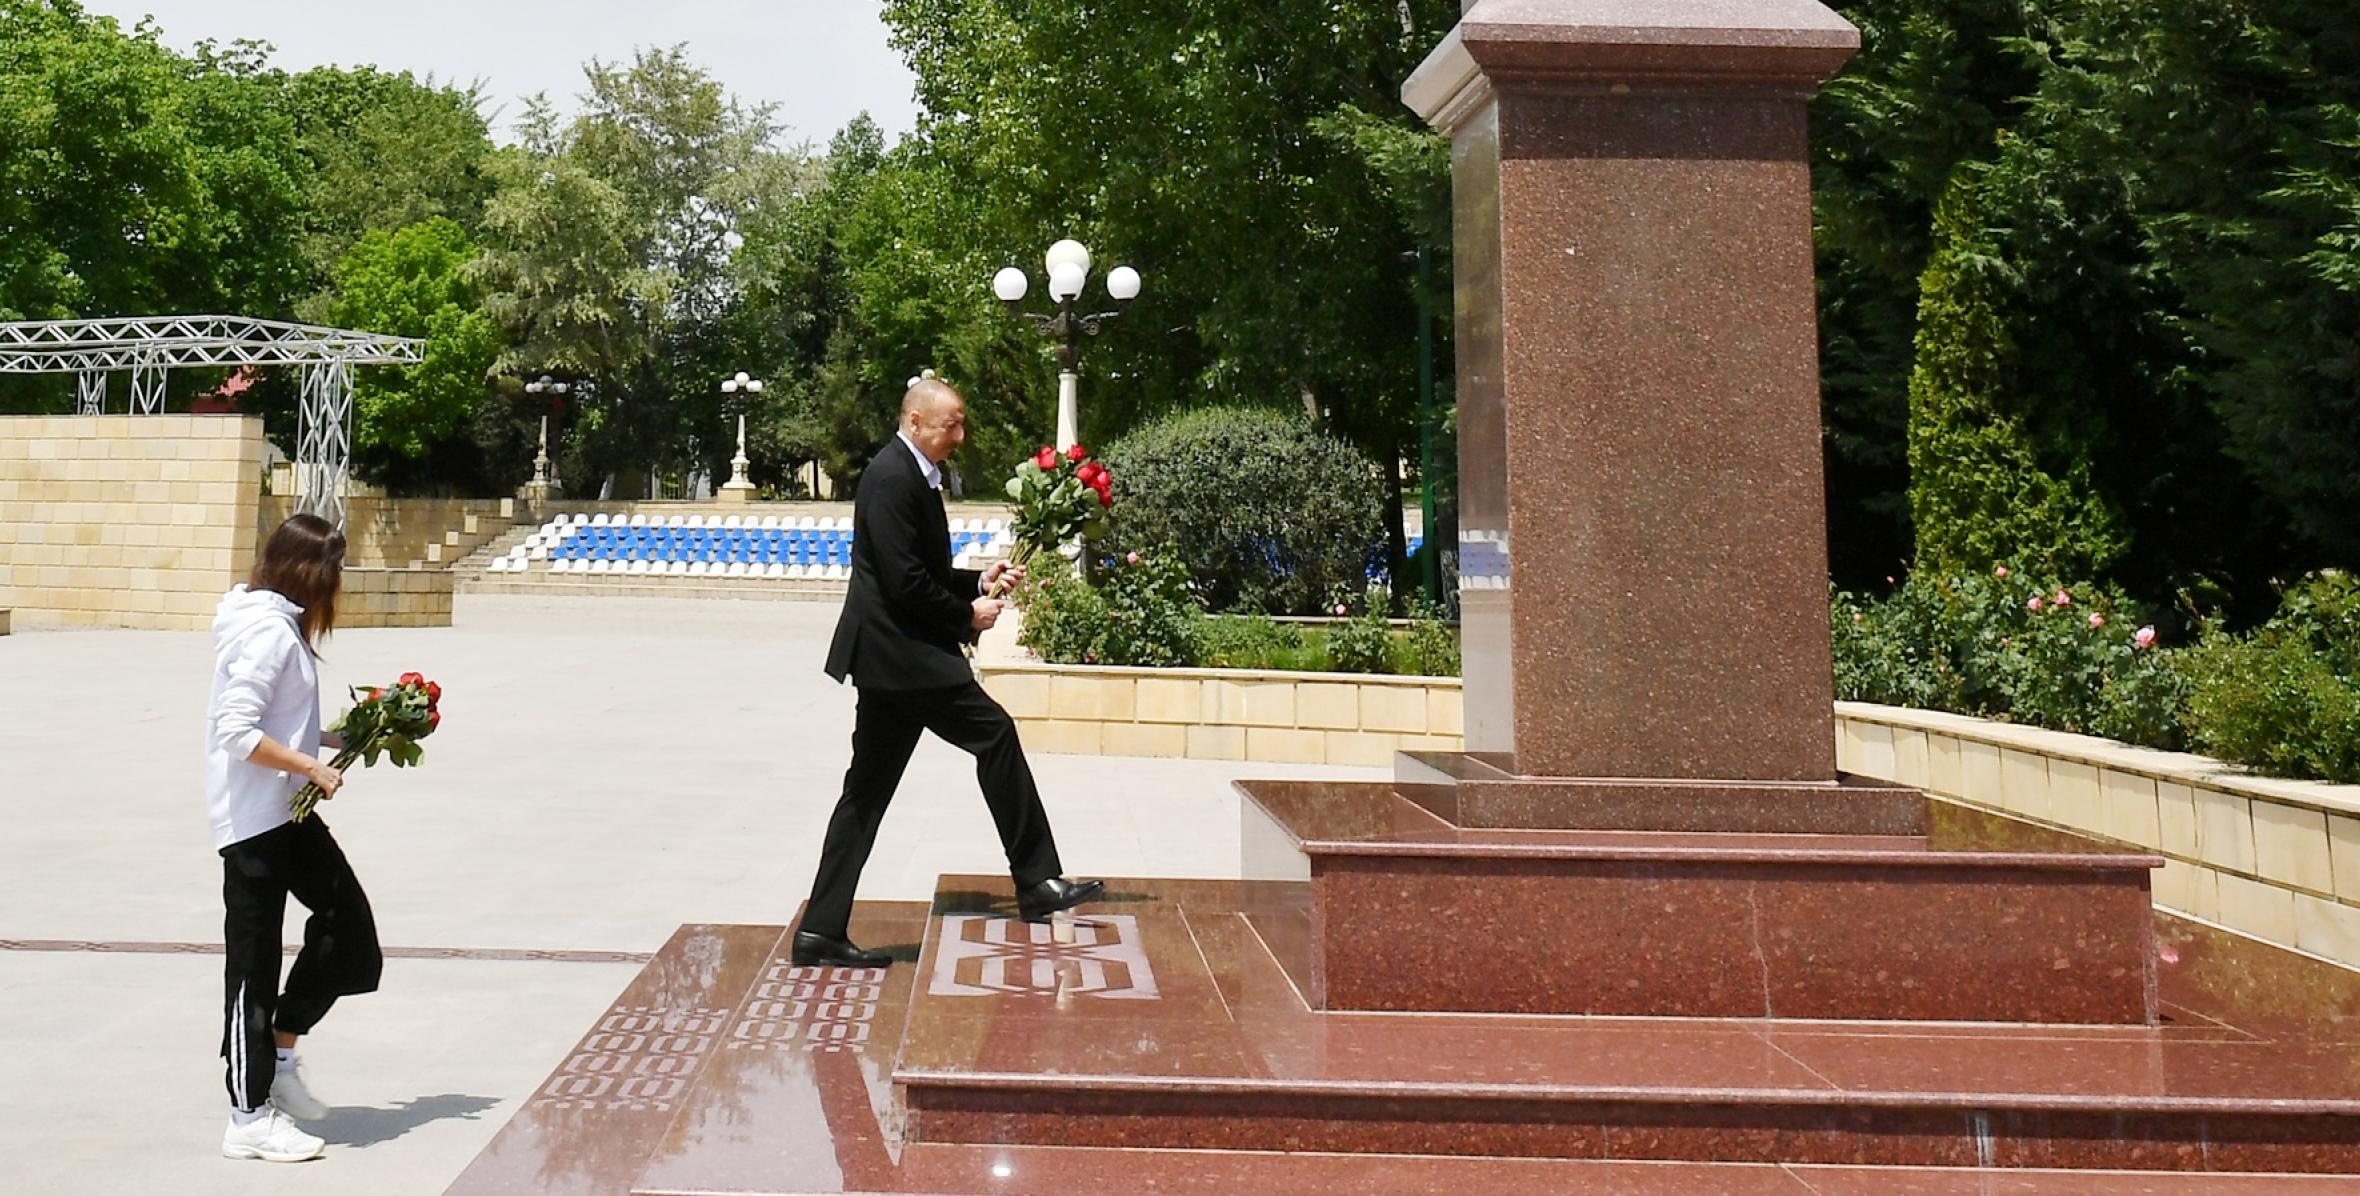 Ilham Aliyev arrived in Shamakhi district for visit